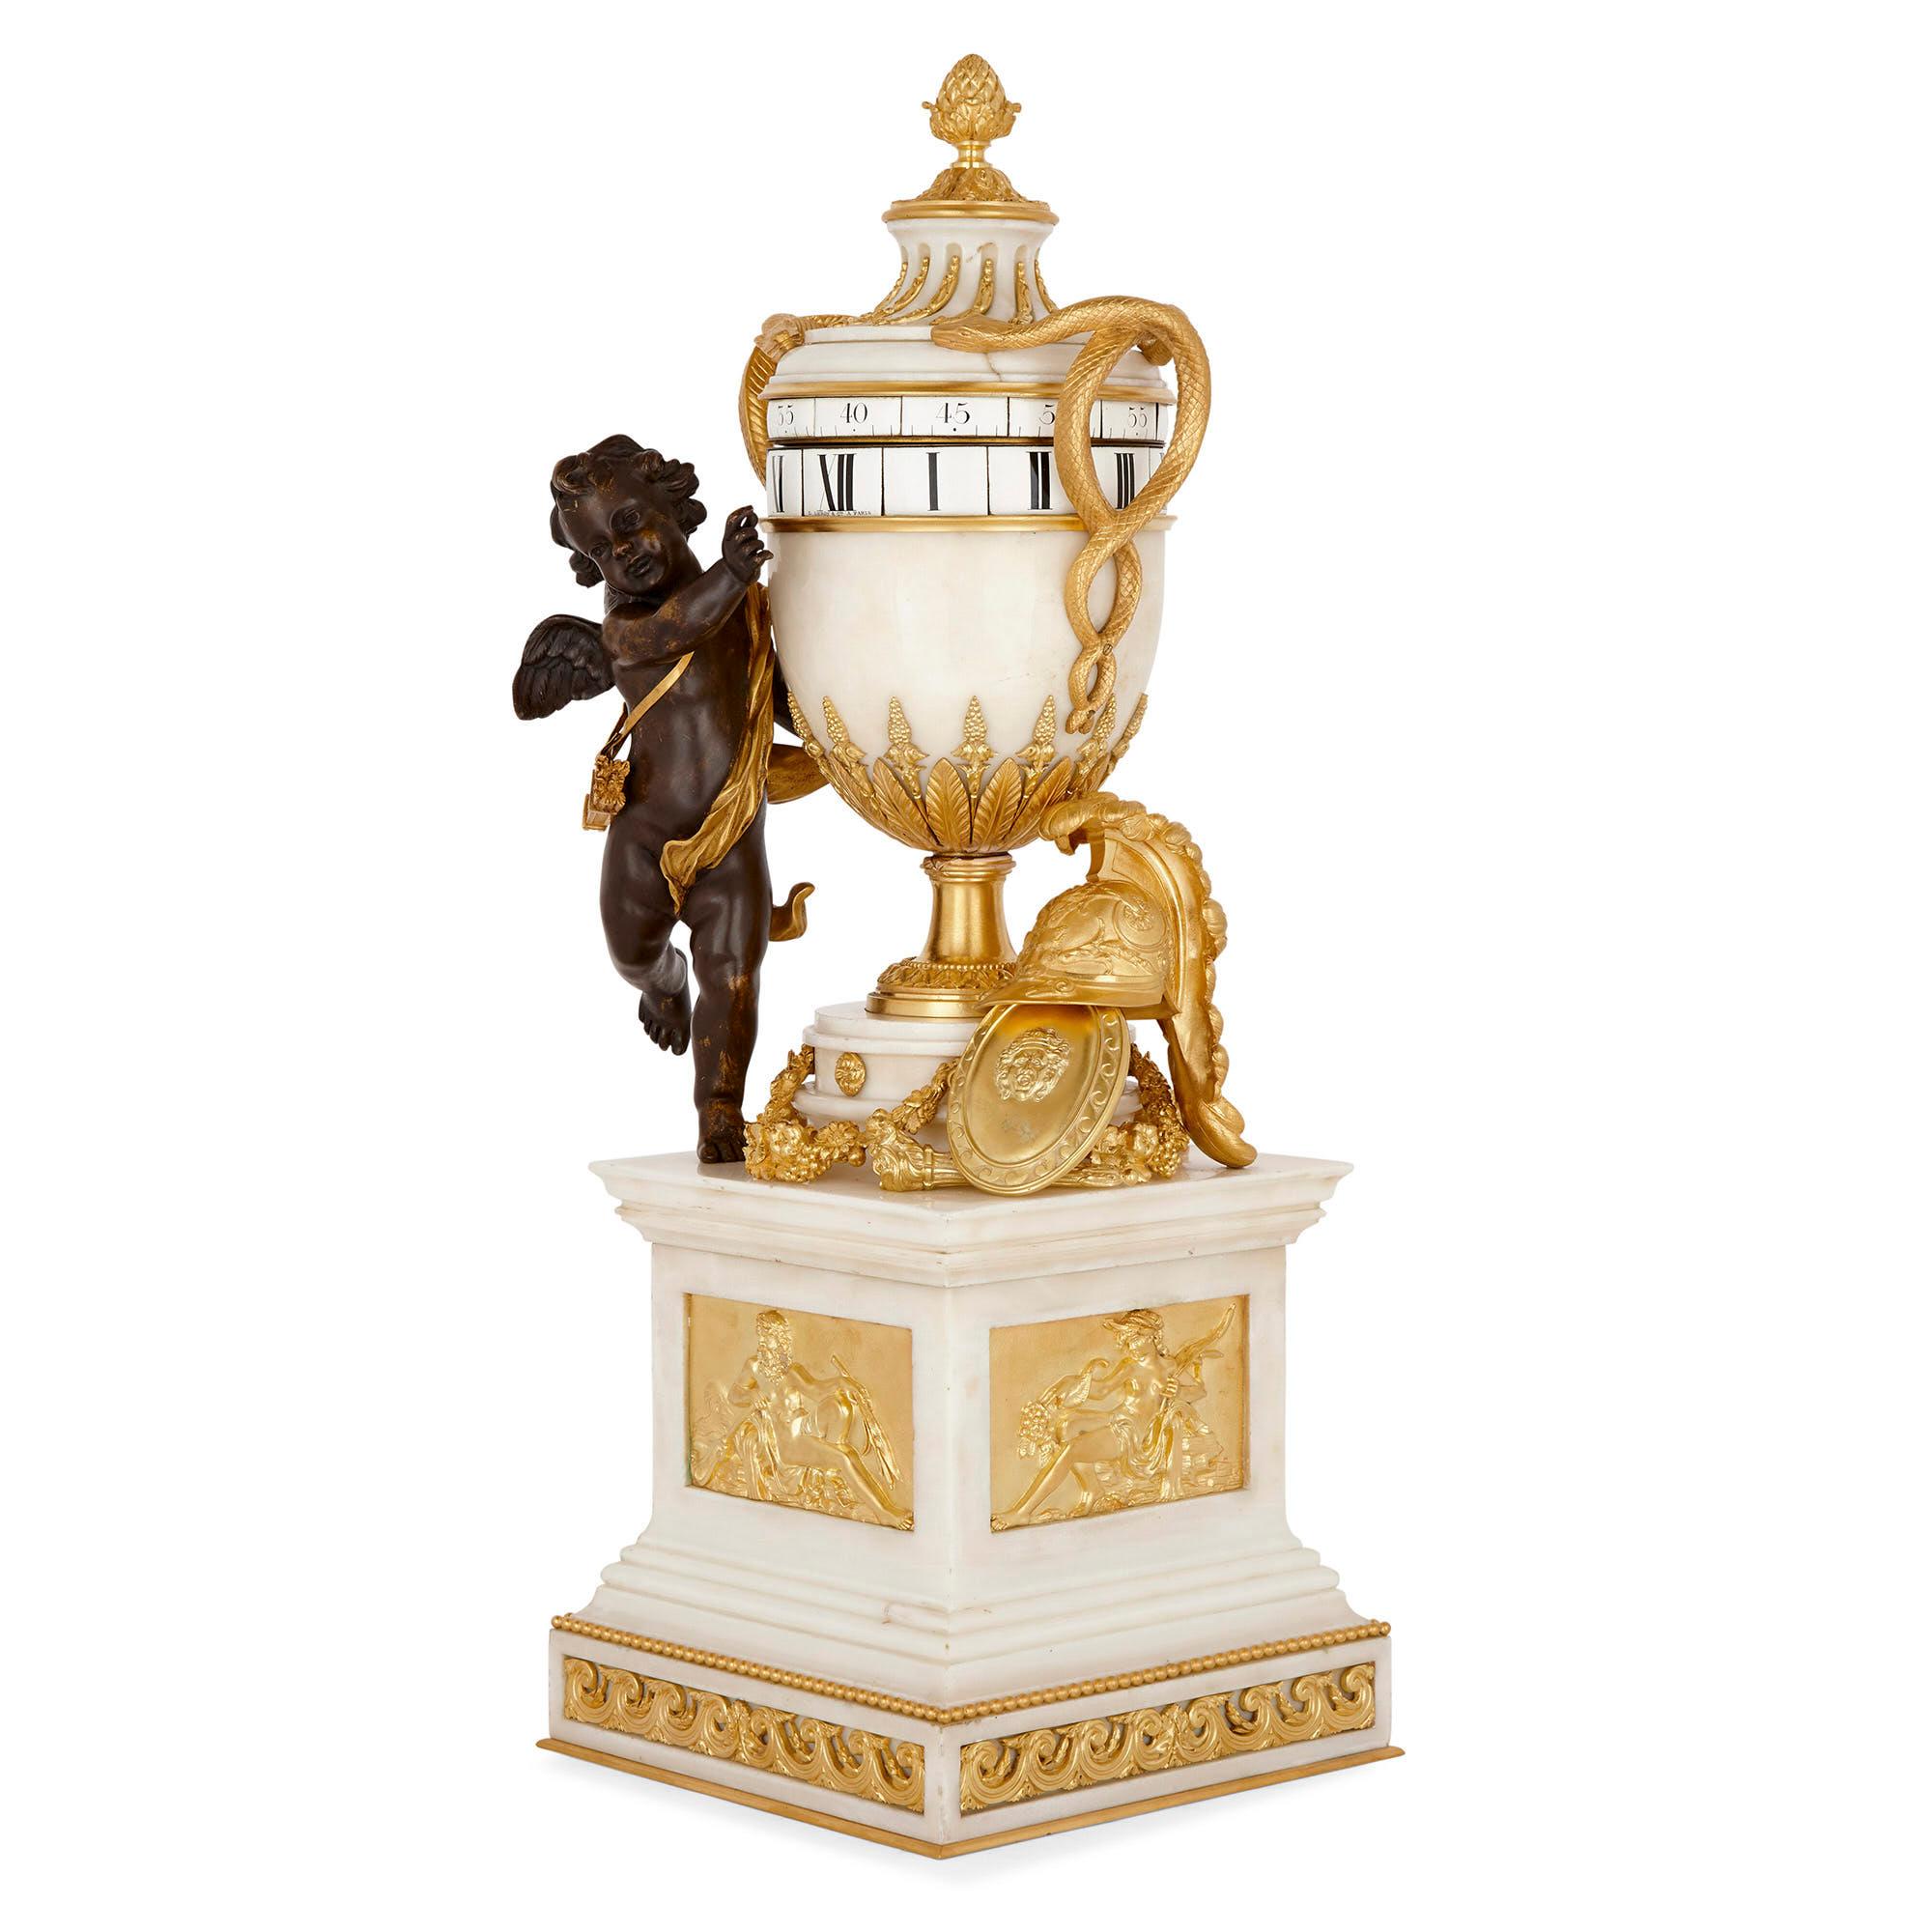 Neoklassizistische Kaminsimsuhr mit rundem Uhrwerk von Leroy & Cie
Französisch, um 1880
Maße: Höhe 72cm, Breite 25cm, Tiefe 25cm

Diese prächtige Kaminsimsuhr aus weißem Marmor, vergoldeter Bronze und patinierter Bronze hat die Form eines